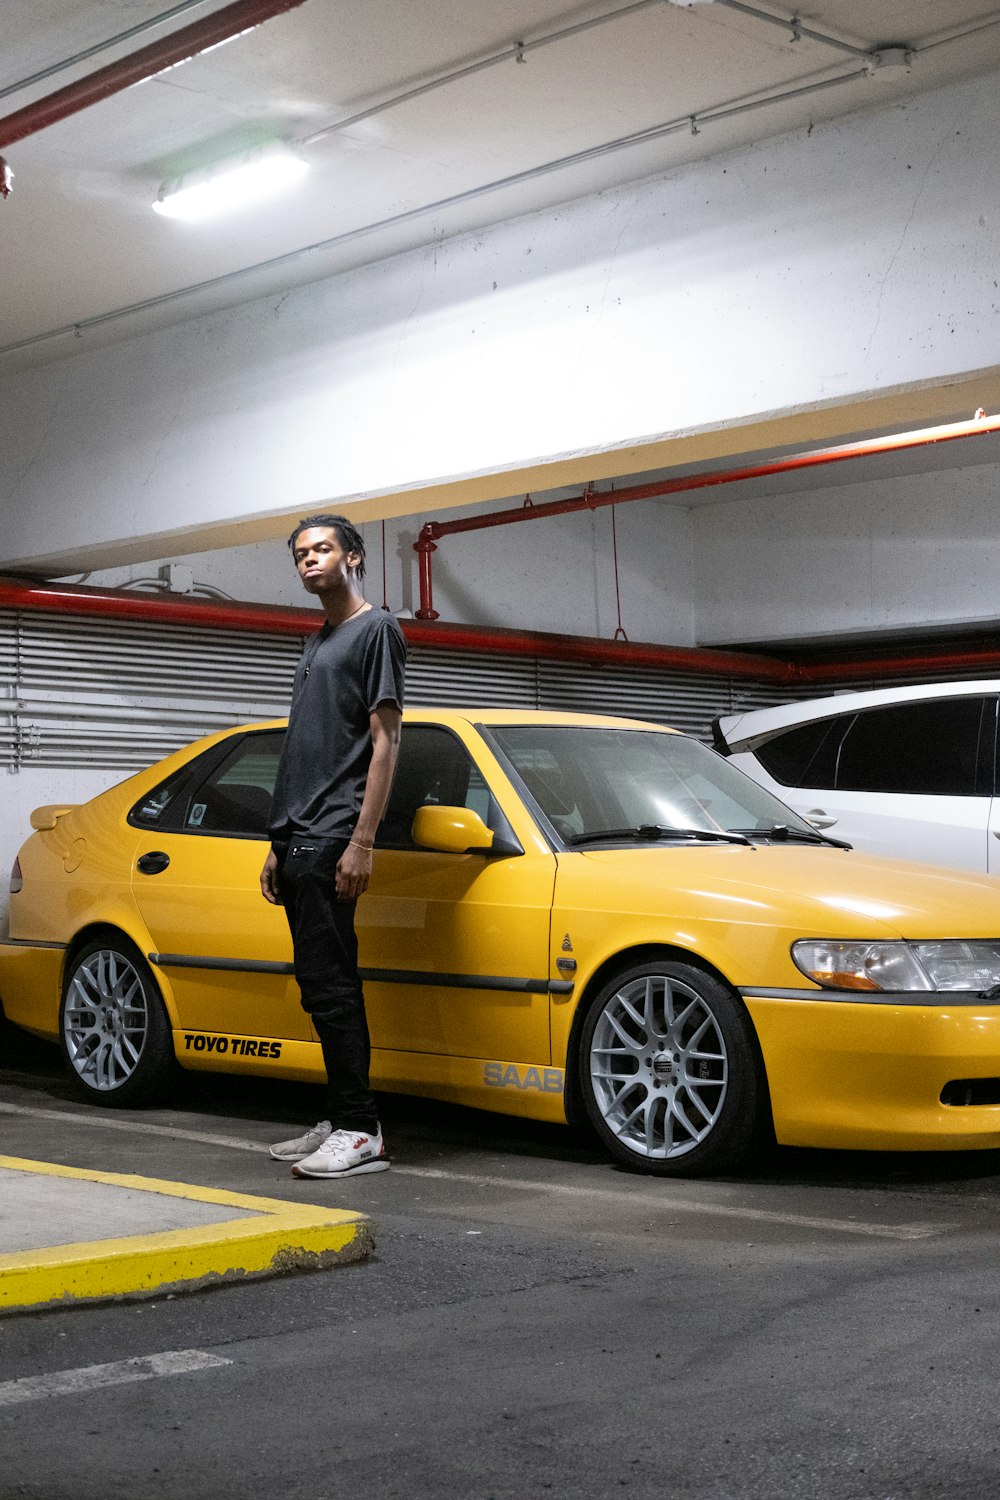 Ein Mann steht neben einem gelben Auto in einem Parkhaus